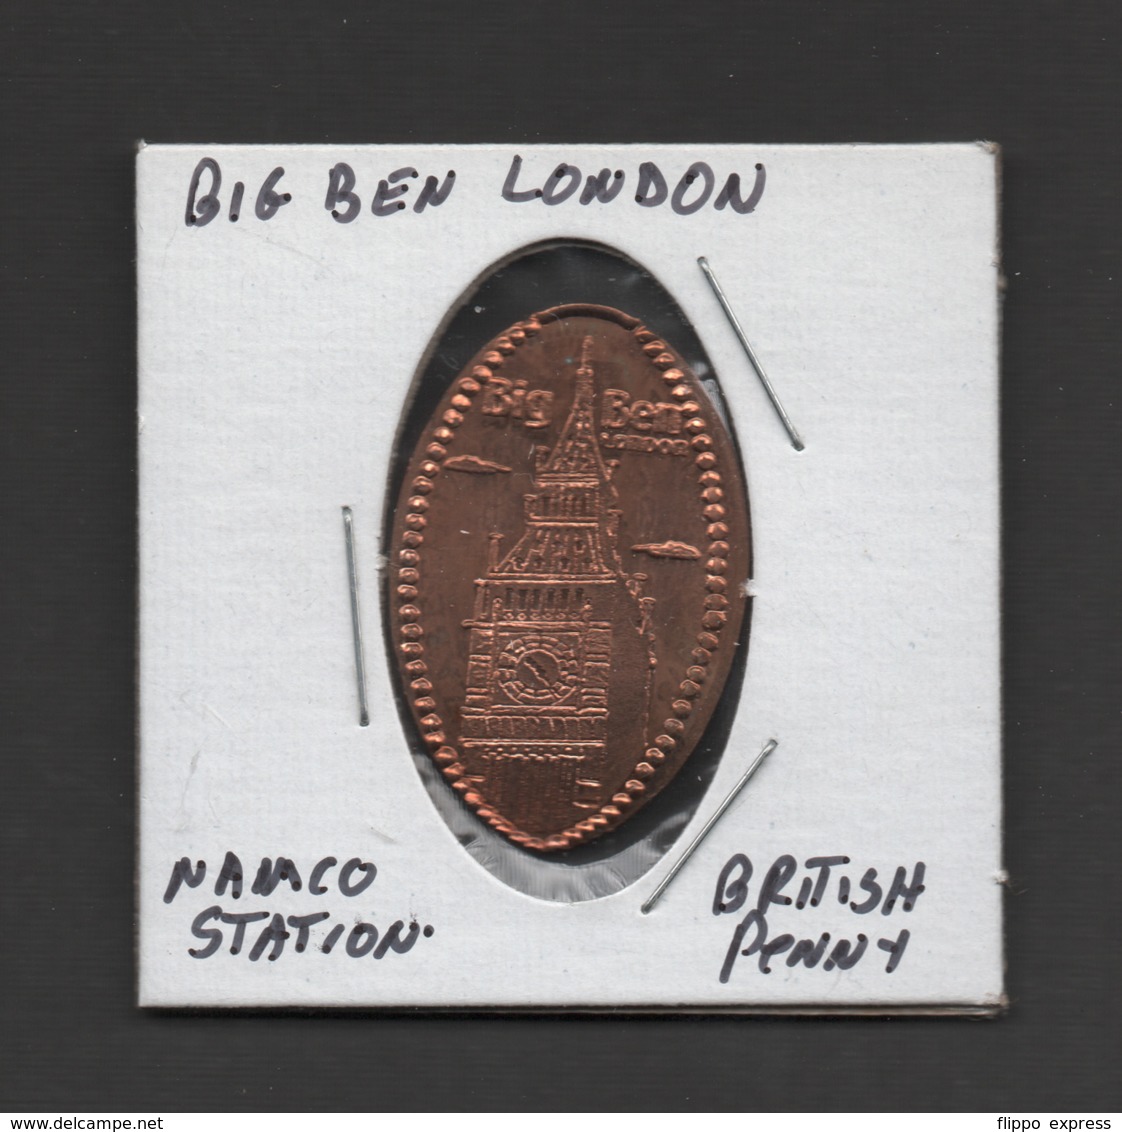 Pressed Penny, Elongated Coin, Big Ben, London, England - Pièces écrasées (Elongated Coins)